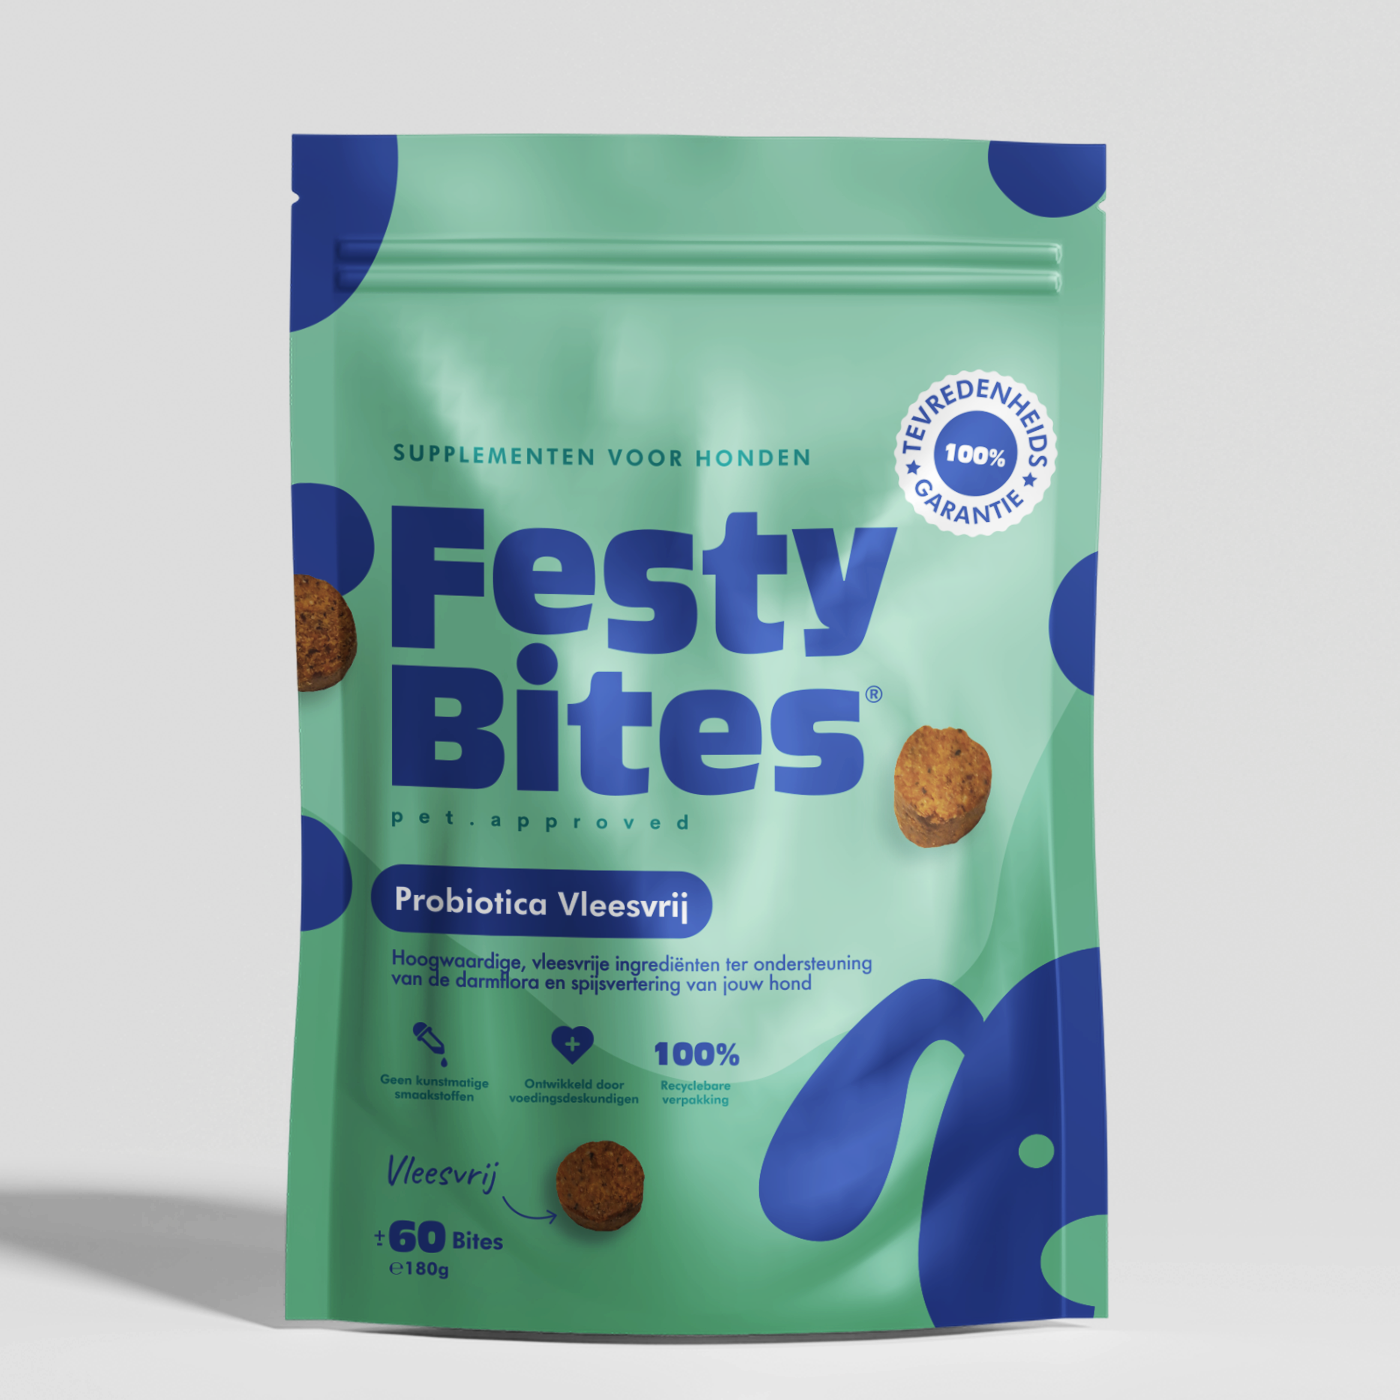 FestyBites® Probiotica voor honden tegen jeuk: vleesvrije snoepjes bieden effectieve hulp bij jeuk- en darmfloraproblemen, geschikt voor allergische honden.